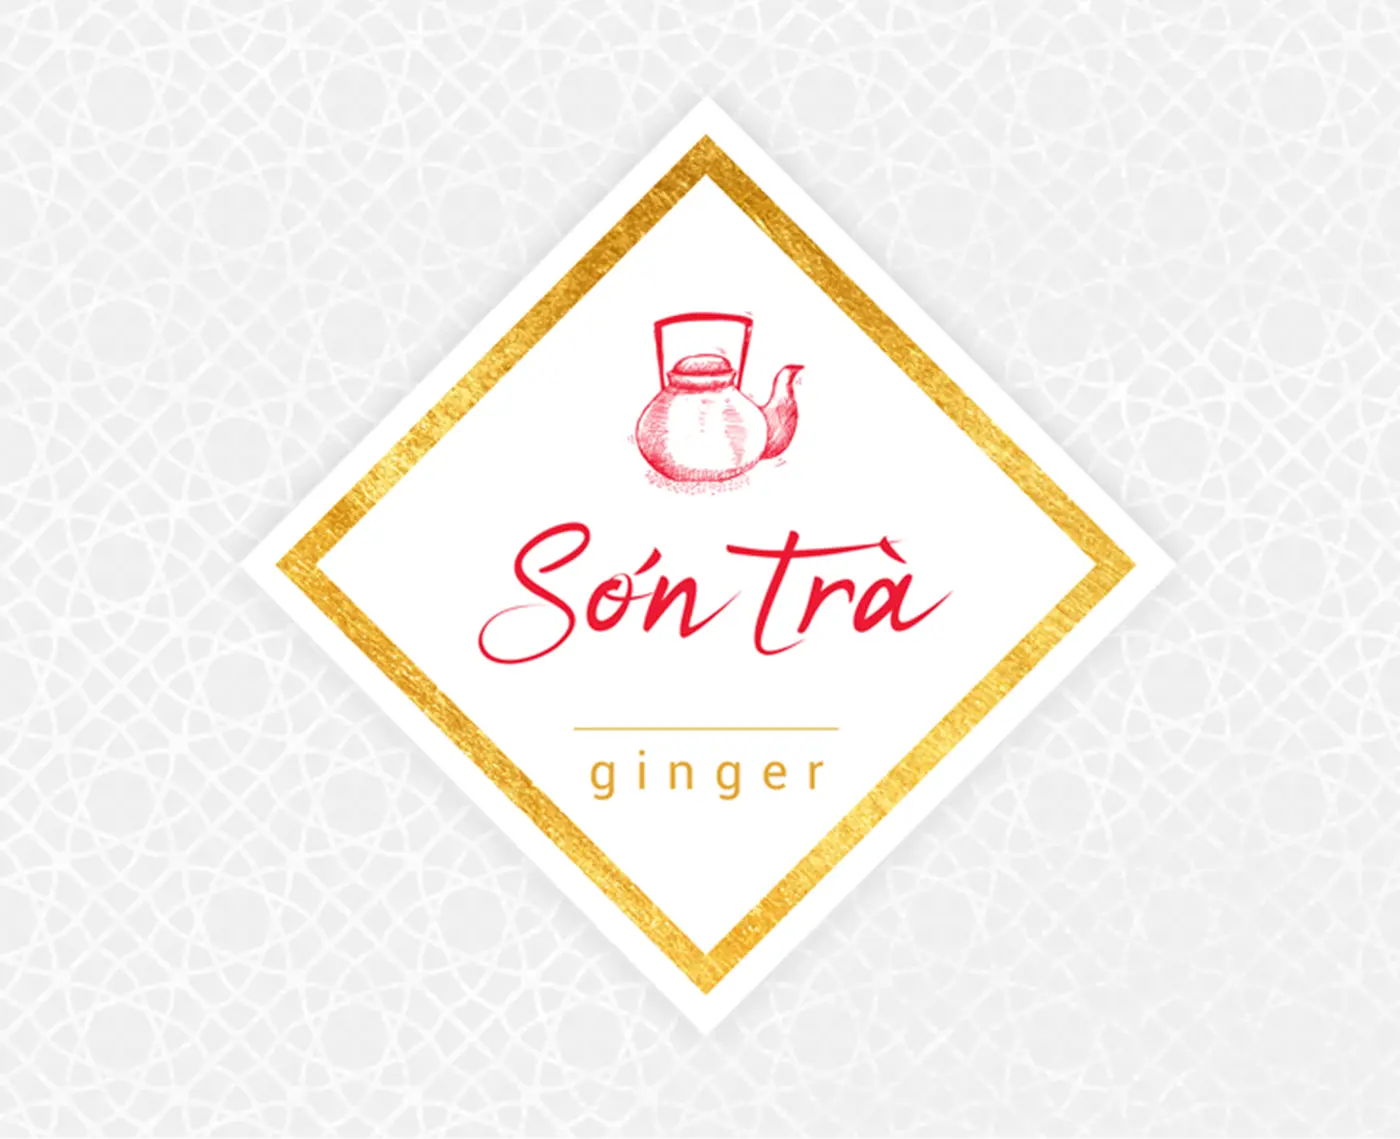 Logo Sơn Trà hình ấm trà và chữ vàng